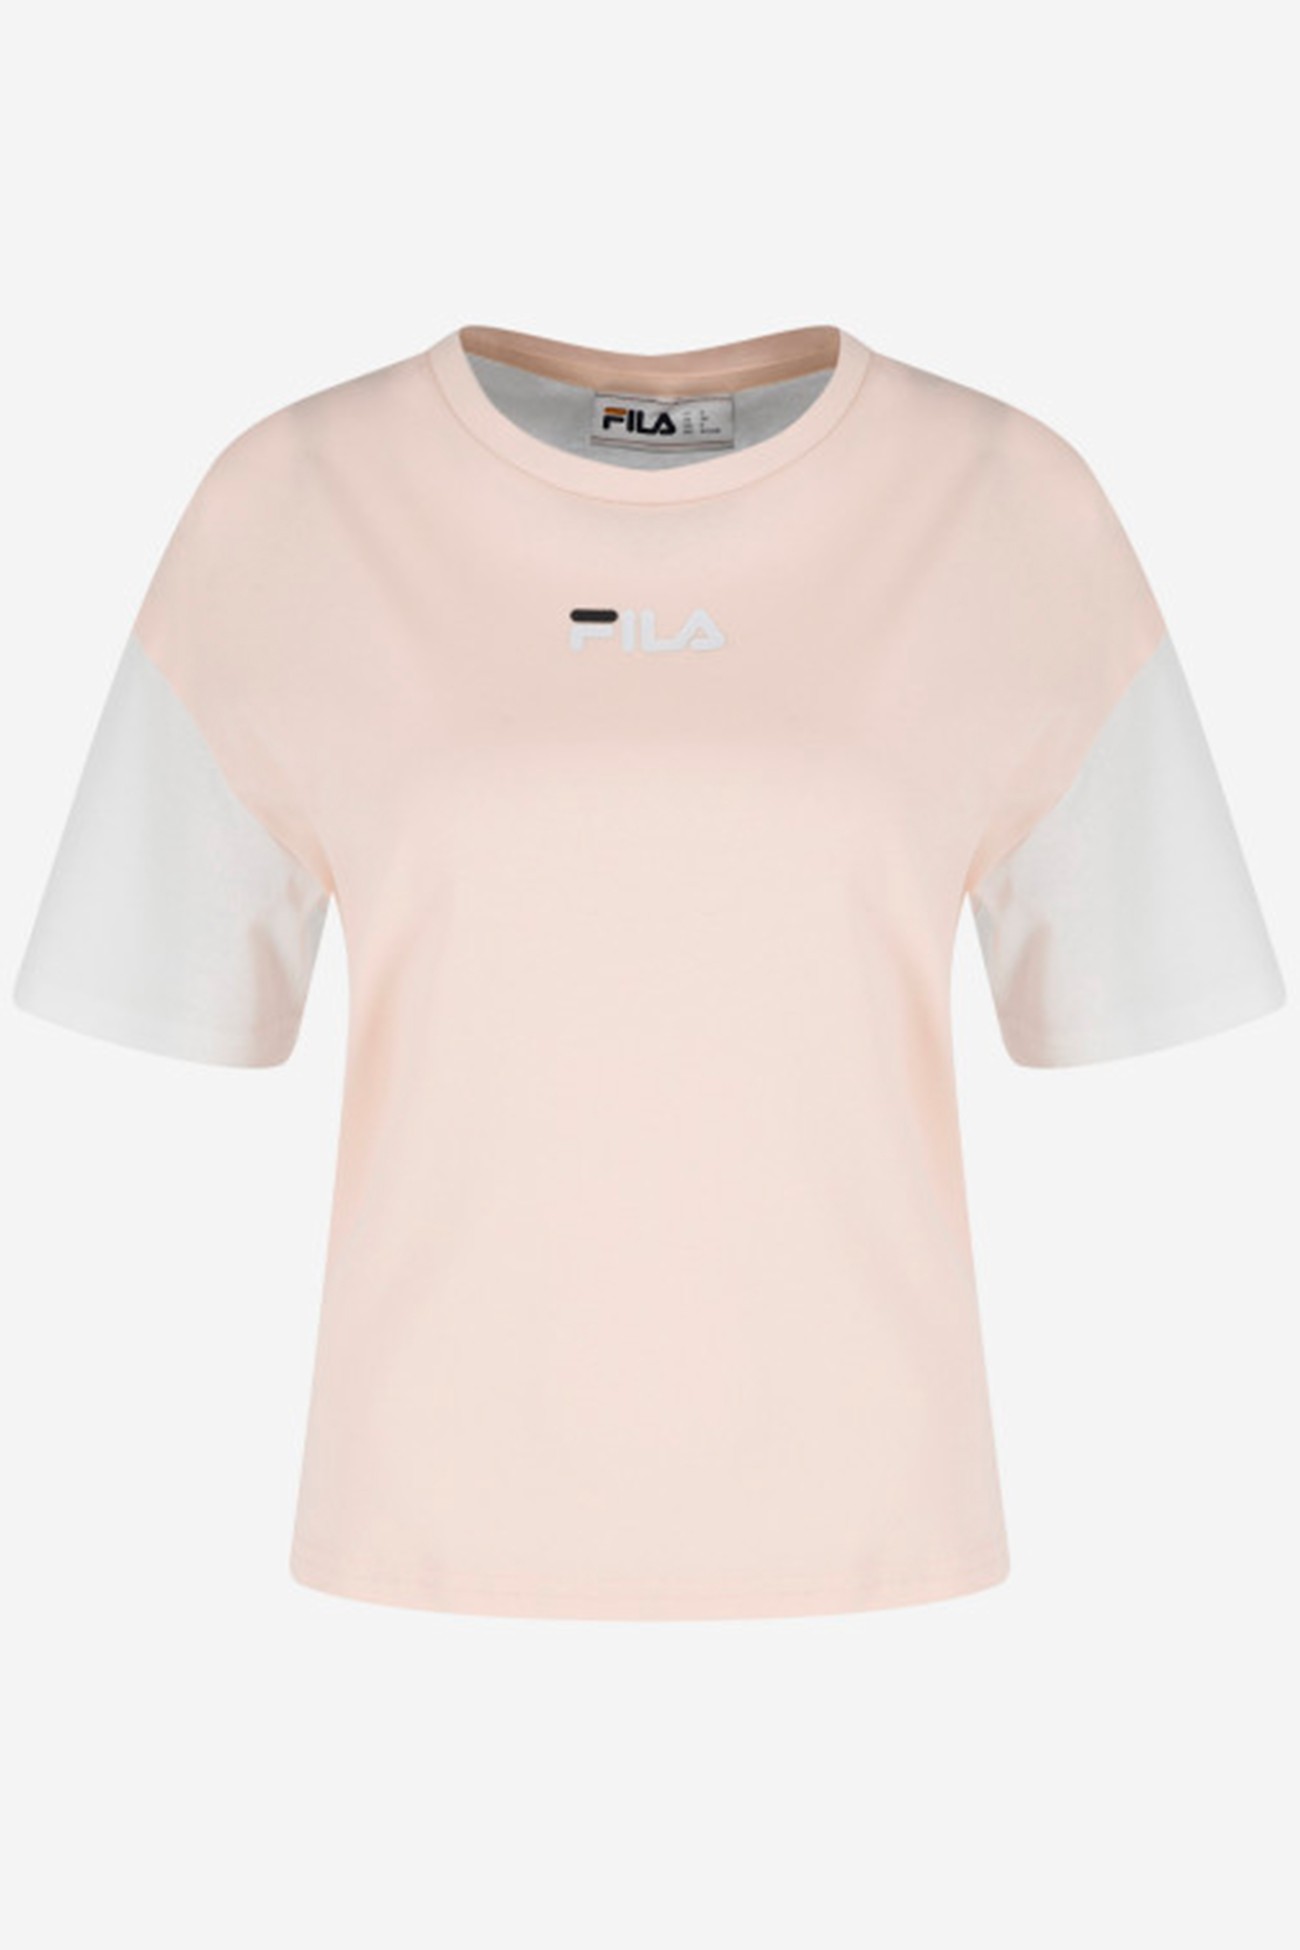 Футболка женская FILA T-shirt белая 113428-KW изображение 5